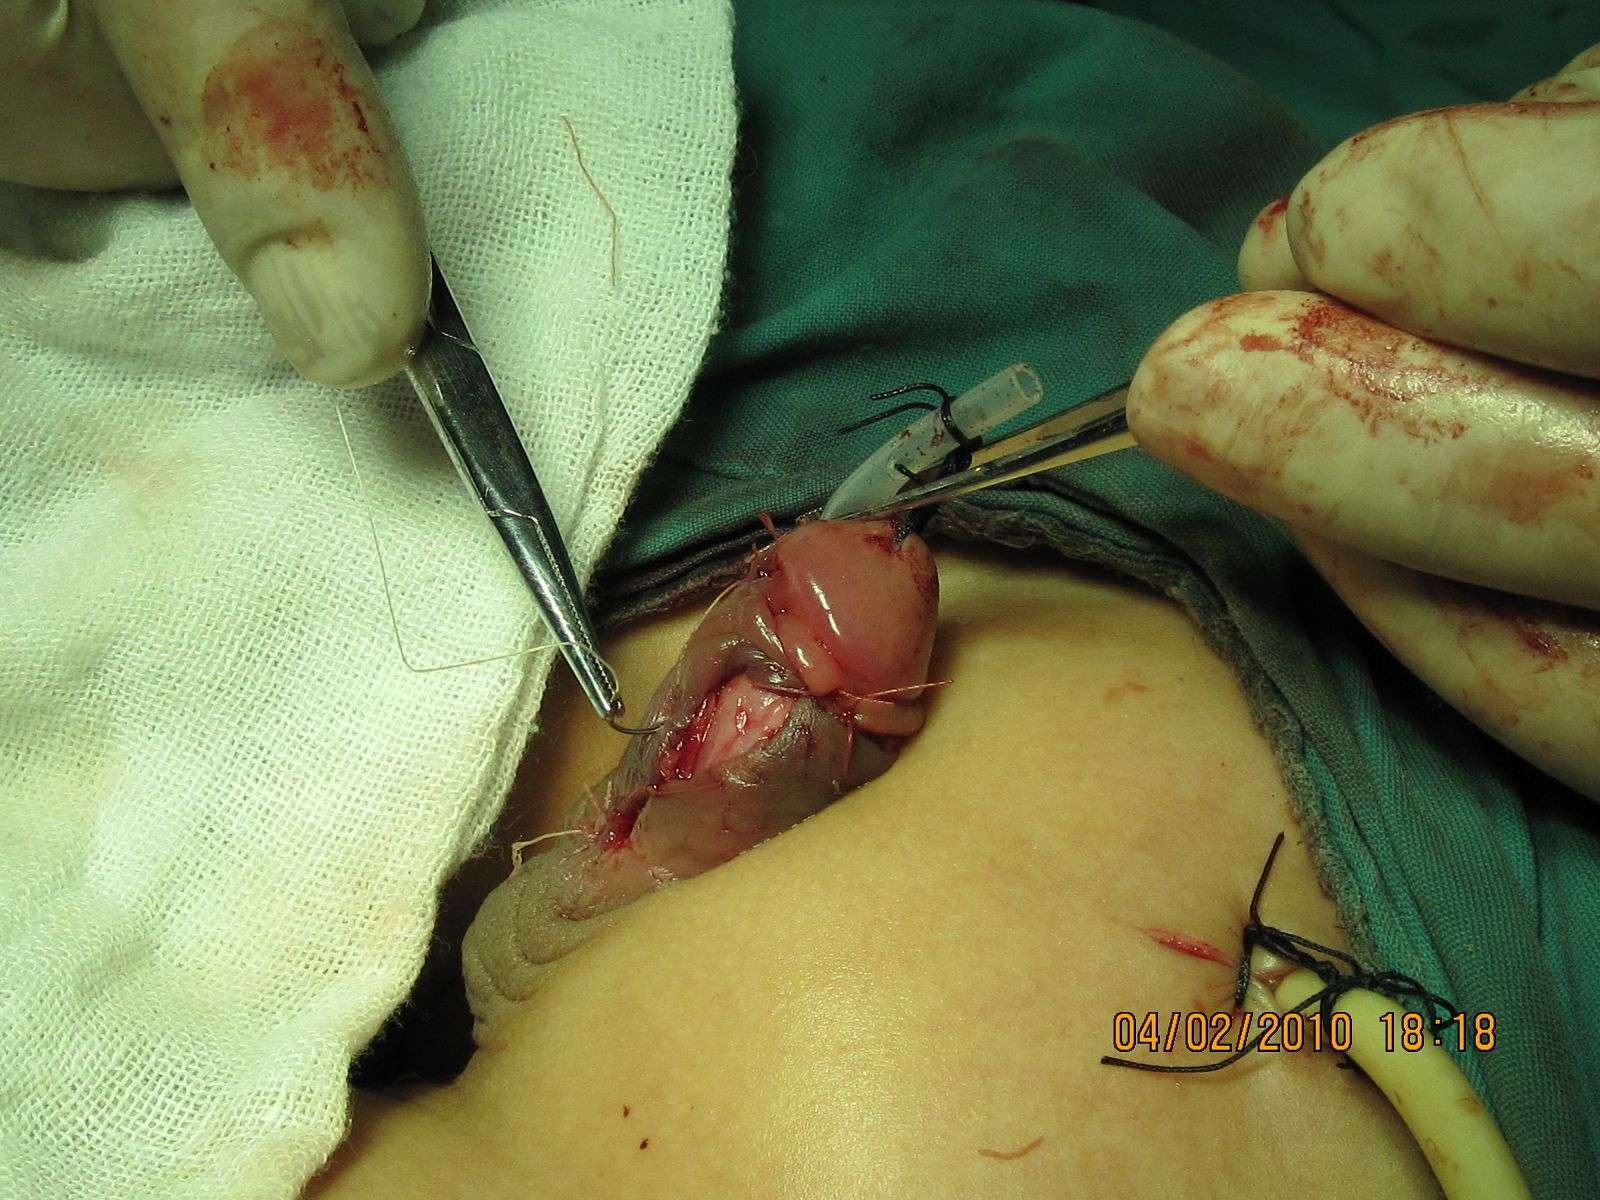 婴儿尿道口下裂的图片图片